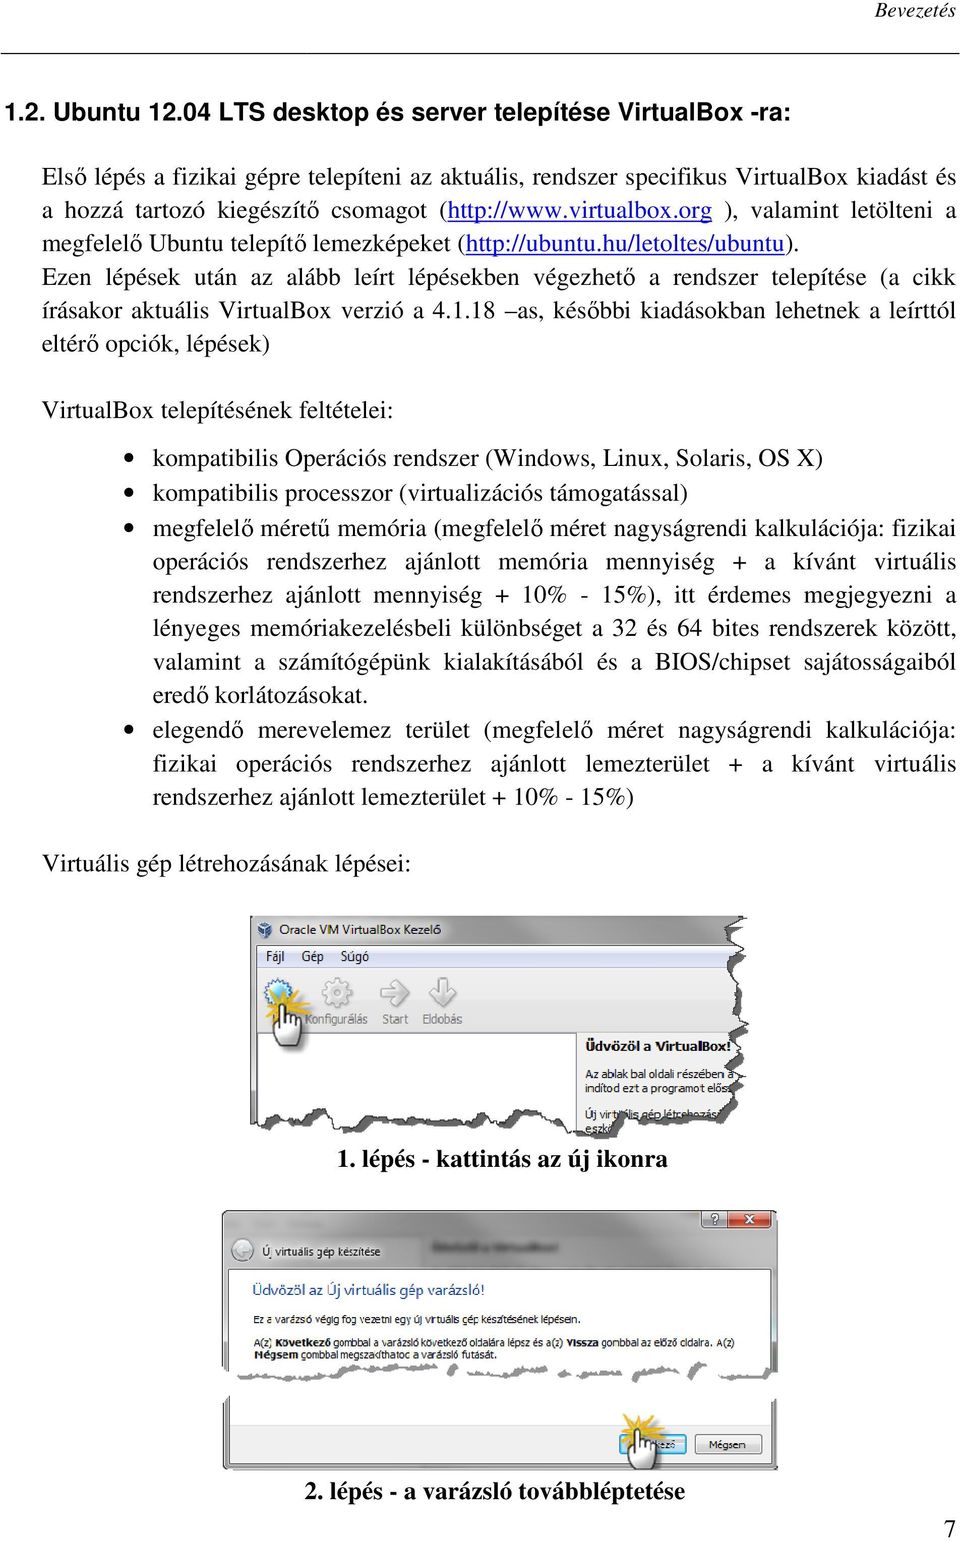 virtualbox.org ), valamint letölteni a megfelelı Ubuntu telepítı lemezképeket (http://ubuntu.hu/letoltes/ubuntu).